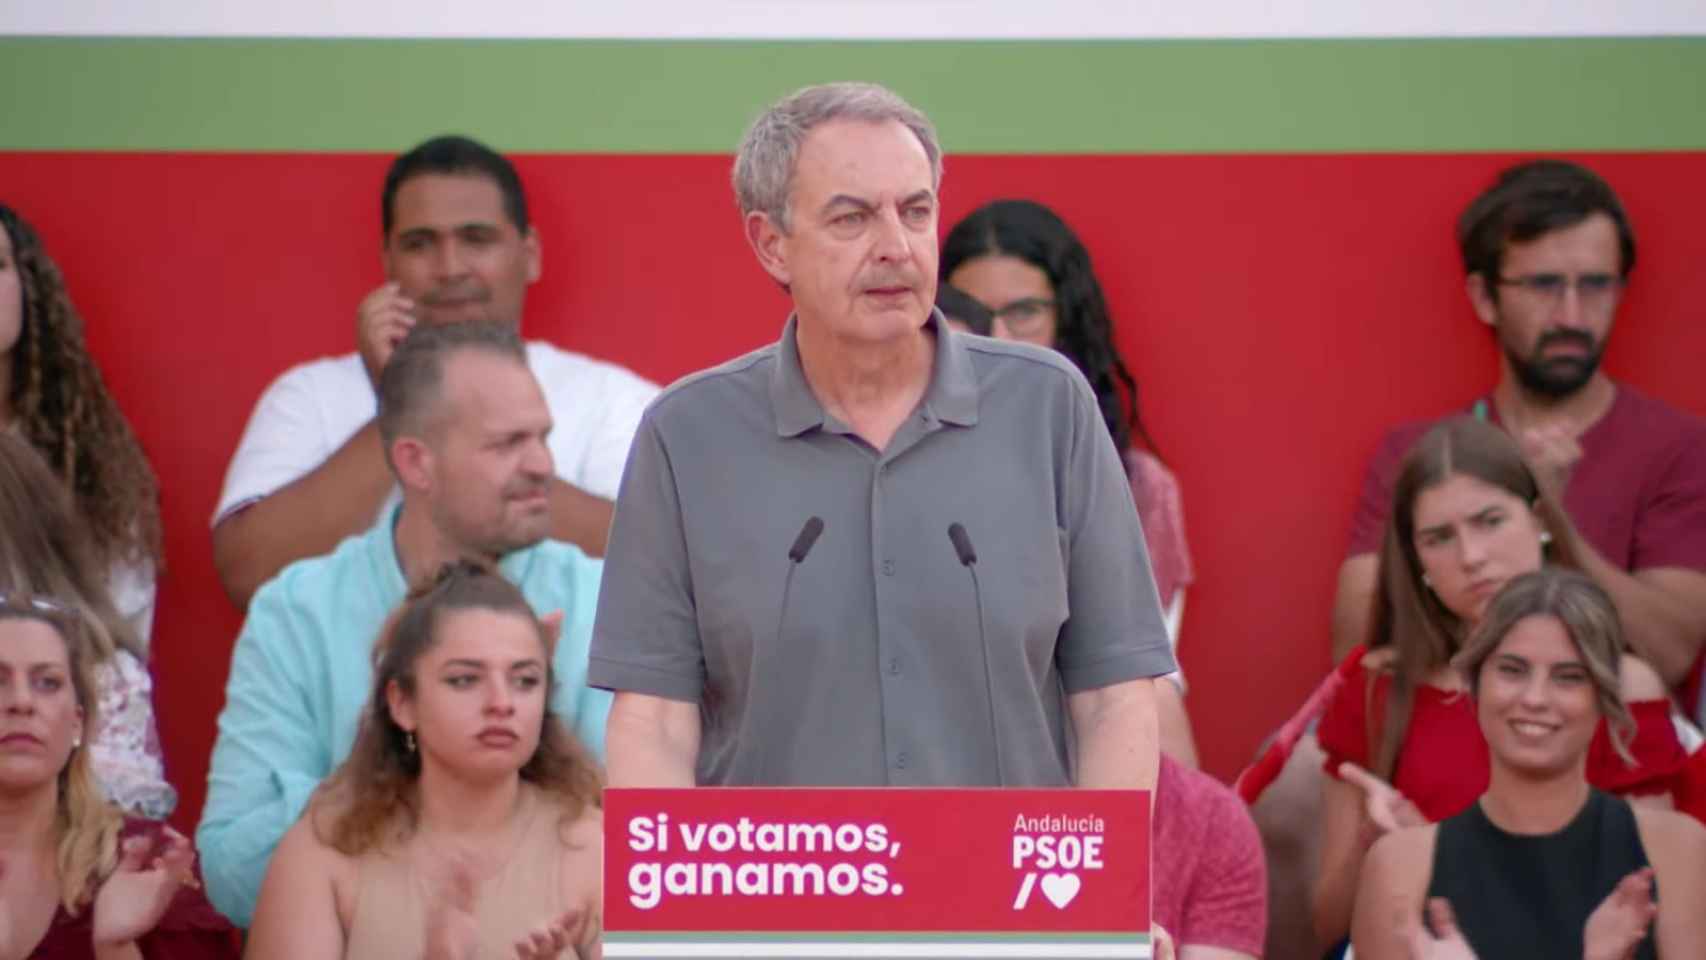 José Luis Rodríguez Zapatero en el mitin en Vélez-Málaga donde alabó las figuras de Chaves y Griñán.